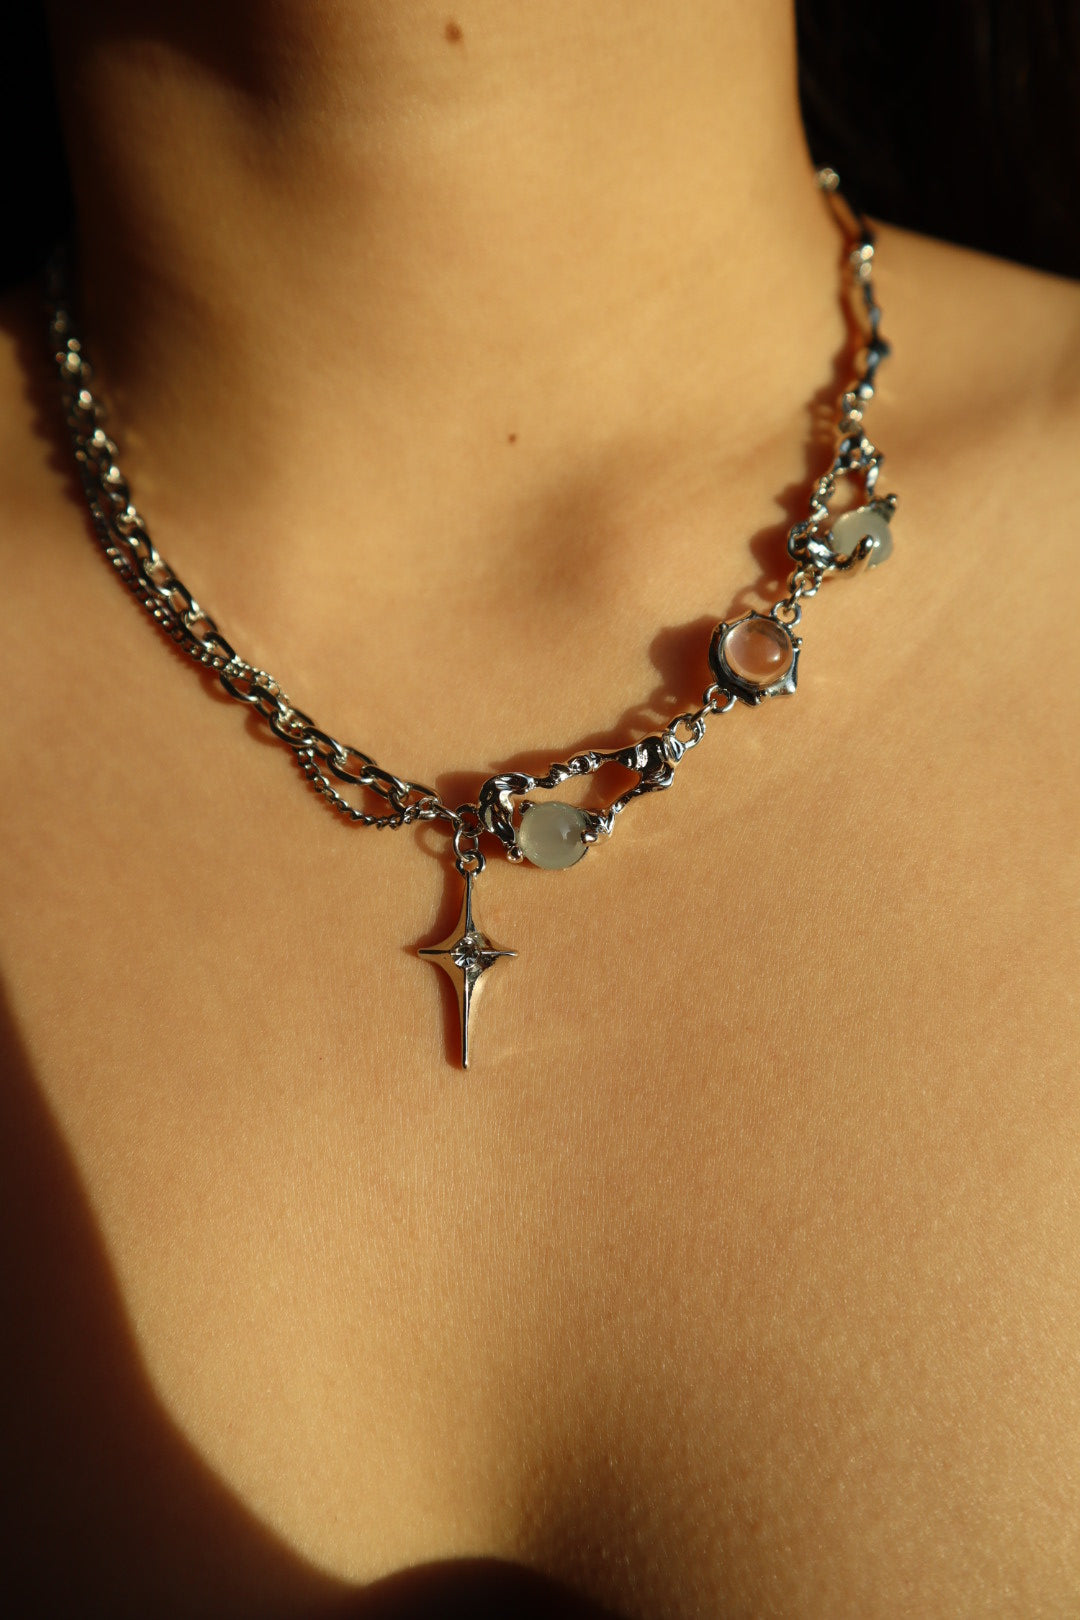 Moonlight Star Necklace